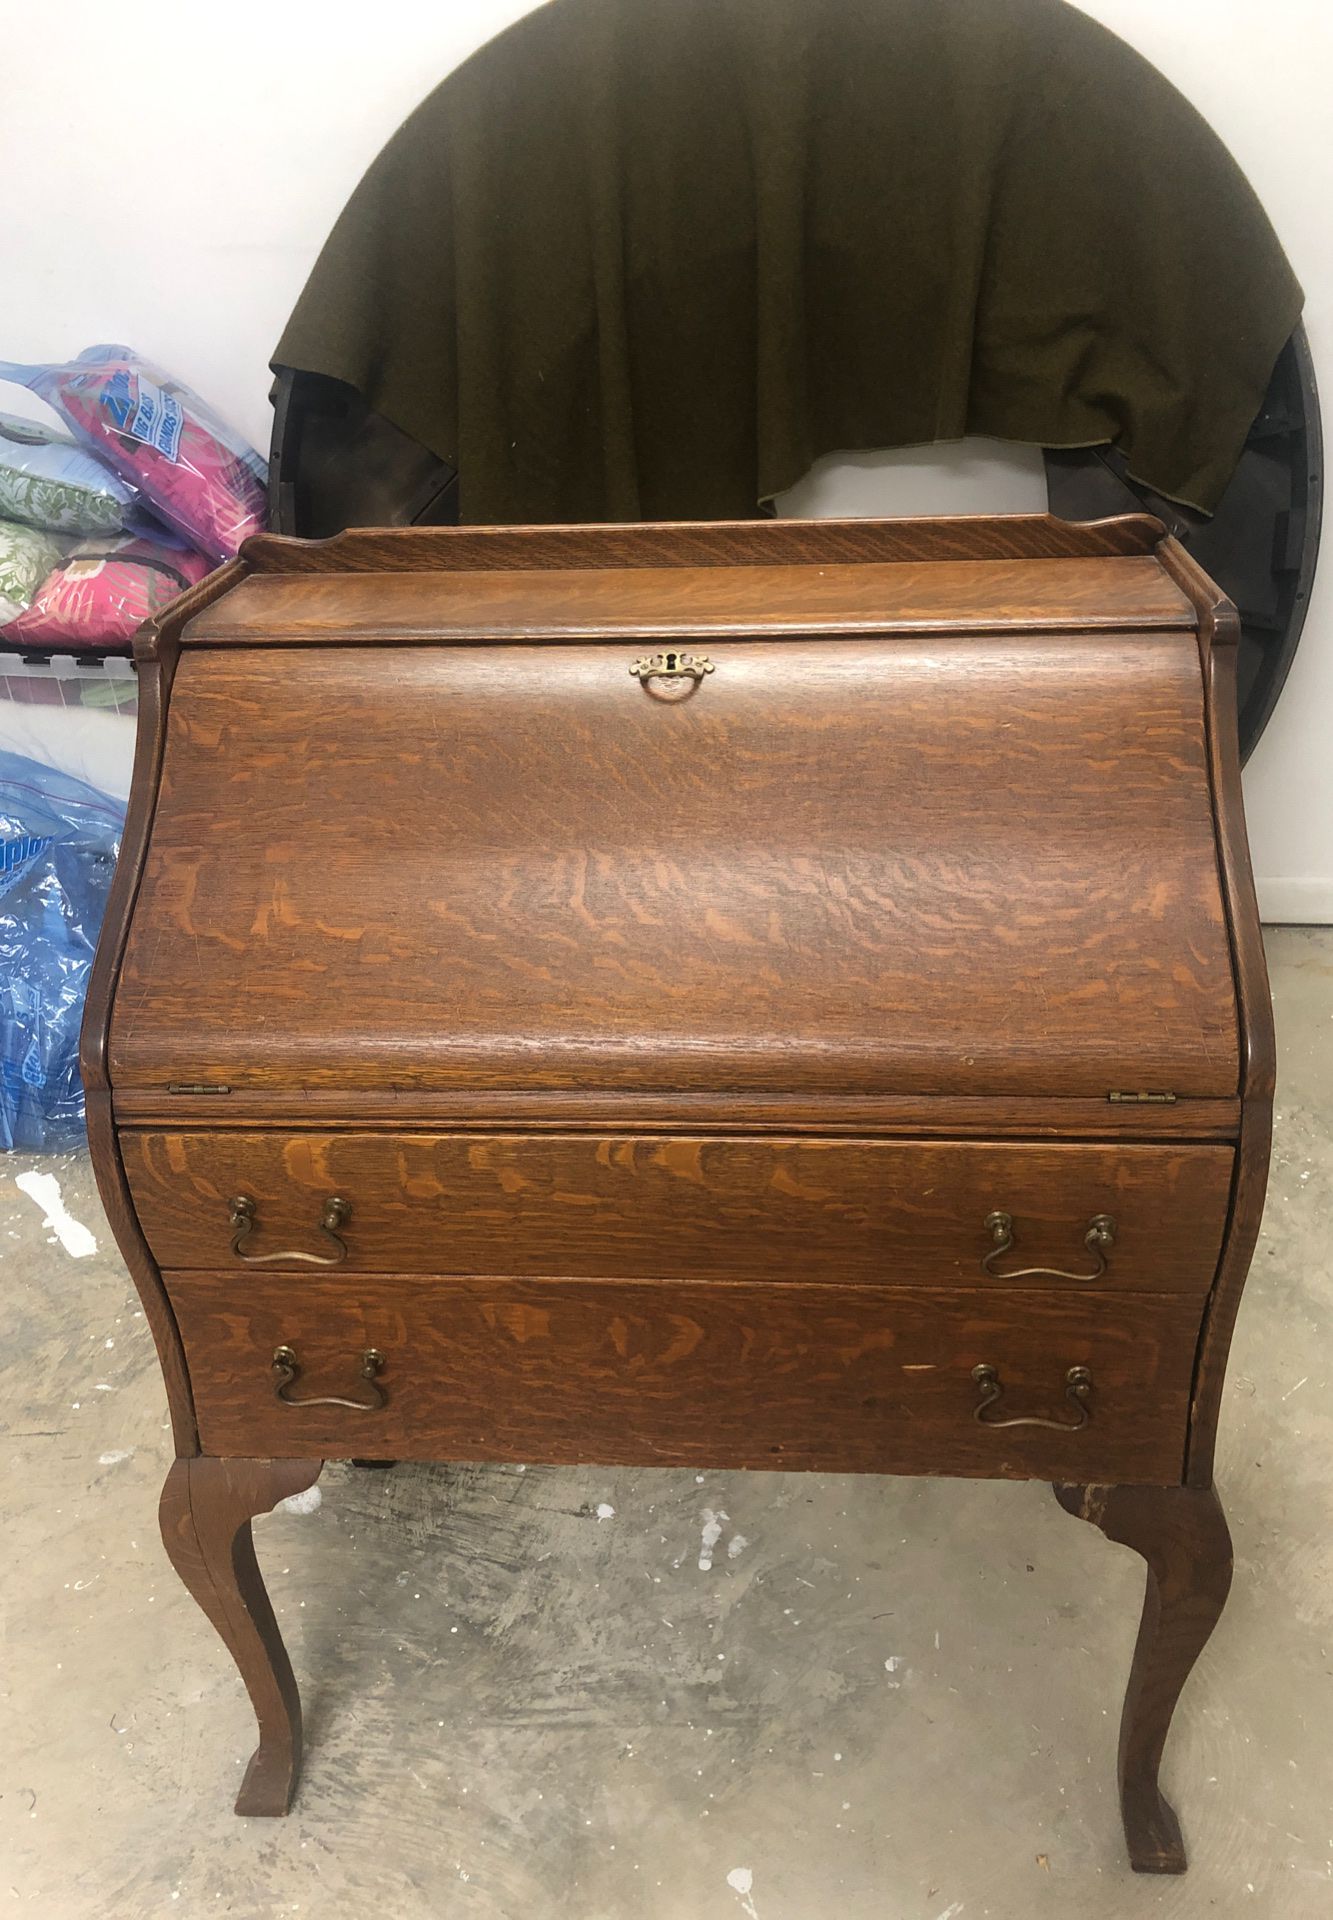 Antique oak desk